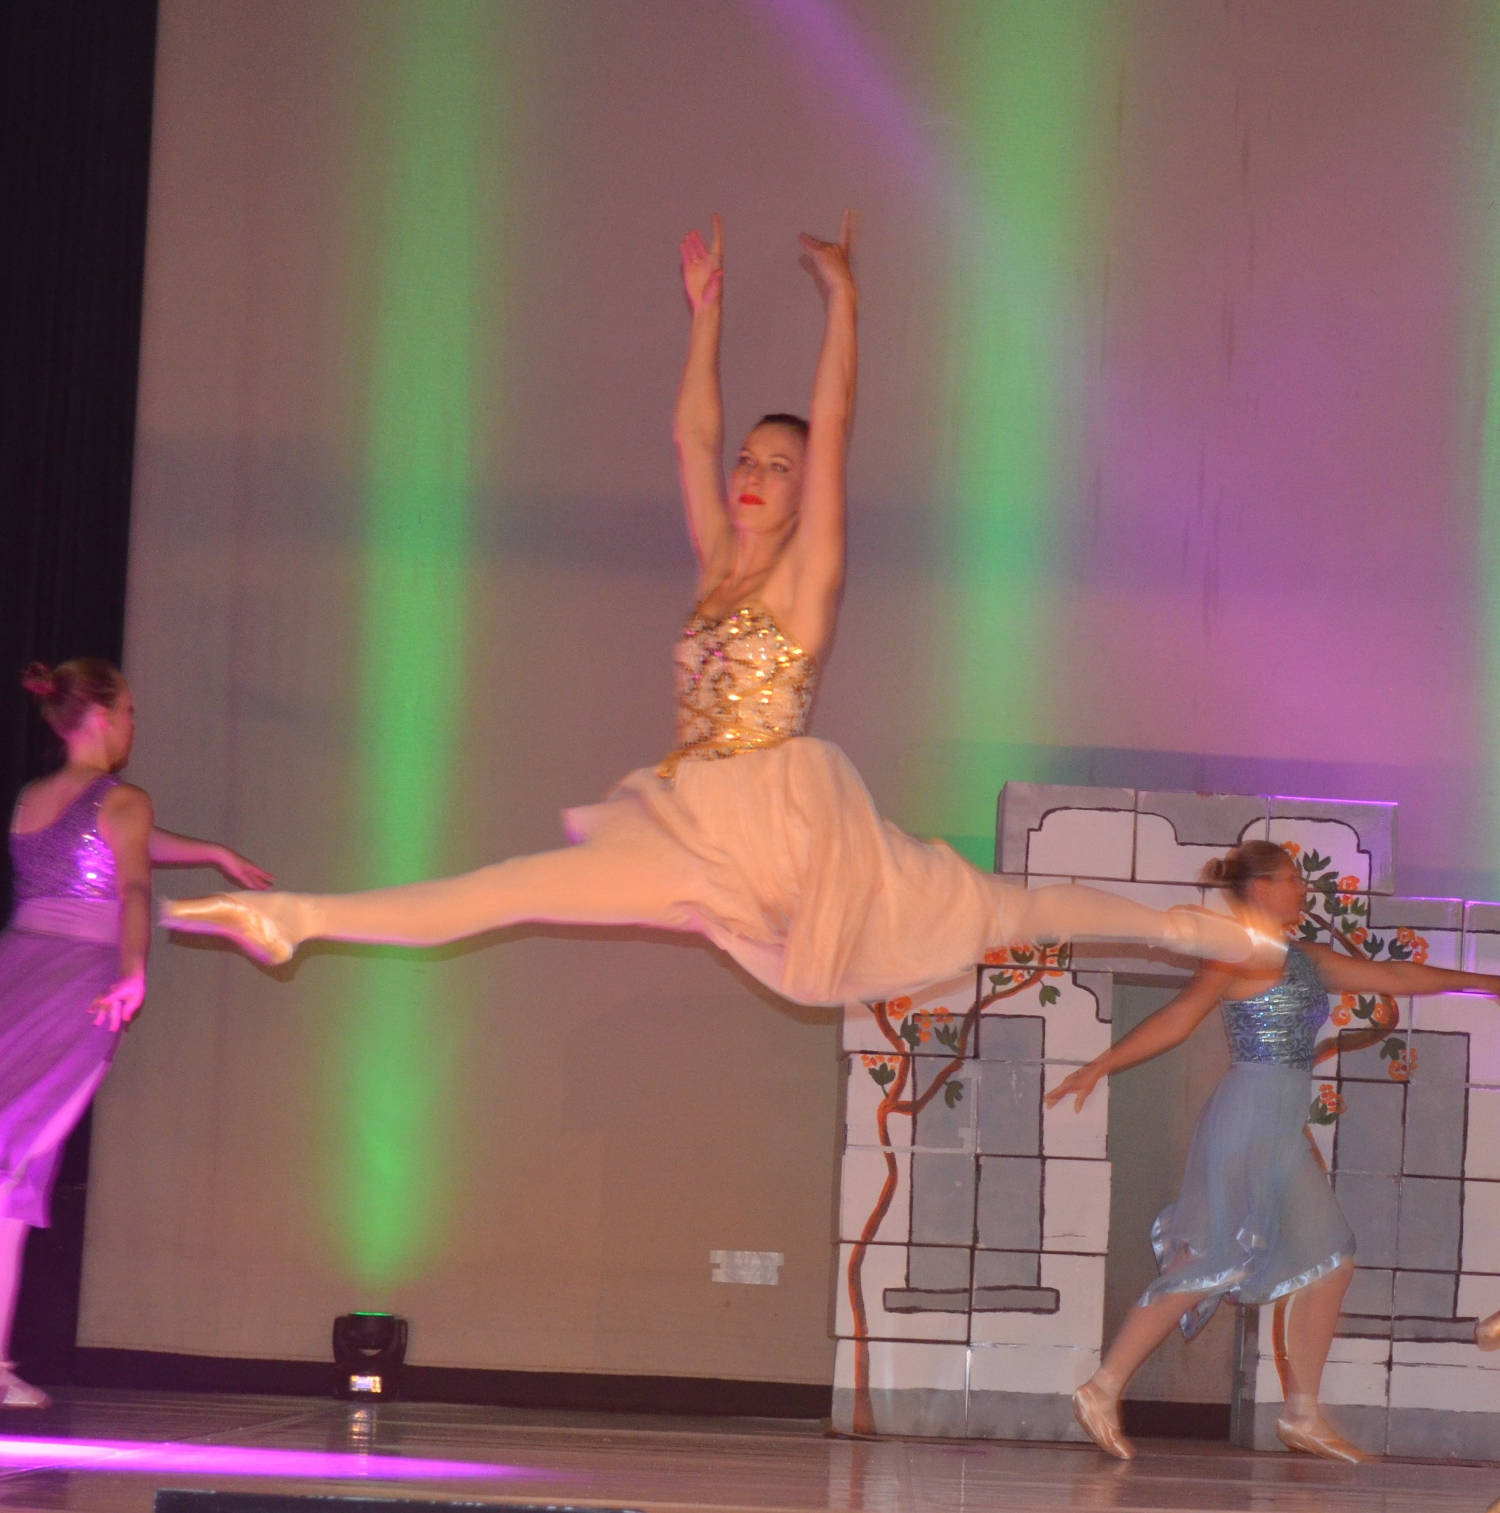 Dansschool Marlynes Mechelen dansoptreden